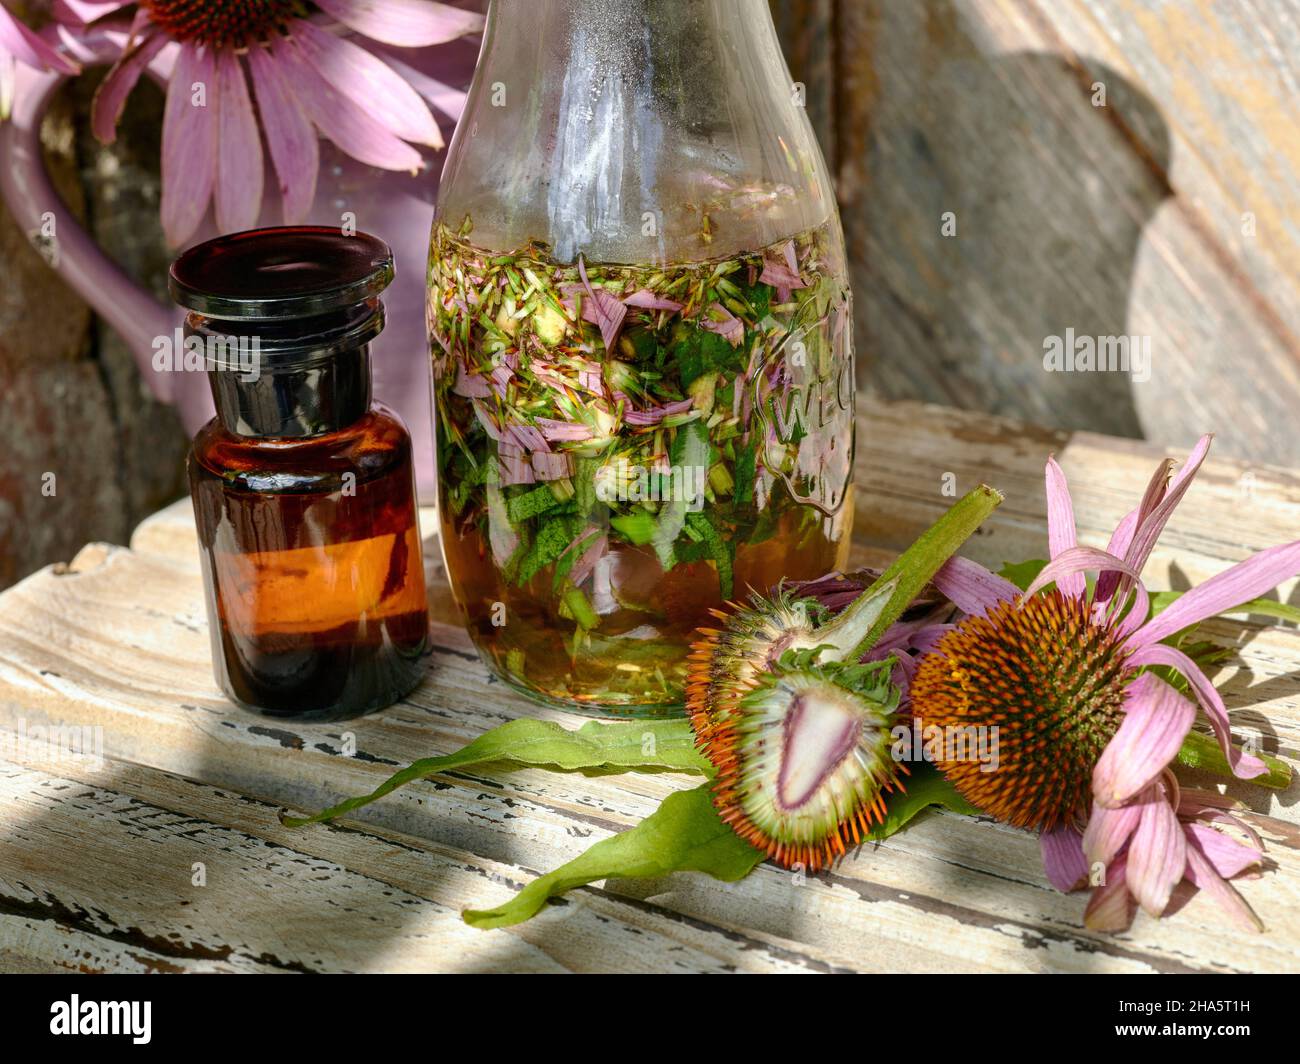 Konelblüten- oder Echinacea-Tinktur in einer braunen Apothekenflasche, eine Weckflasche mit zerdrücktem Echinacea und zwei Echinacea-Blüten, von denen eine in zwei Hälften geschnitten ist, auf einem Holztisch vor einem Krug mit weiteren Blumen und einer Holztür Stockfoto